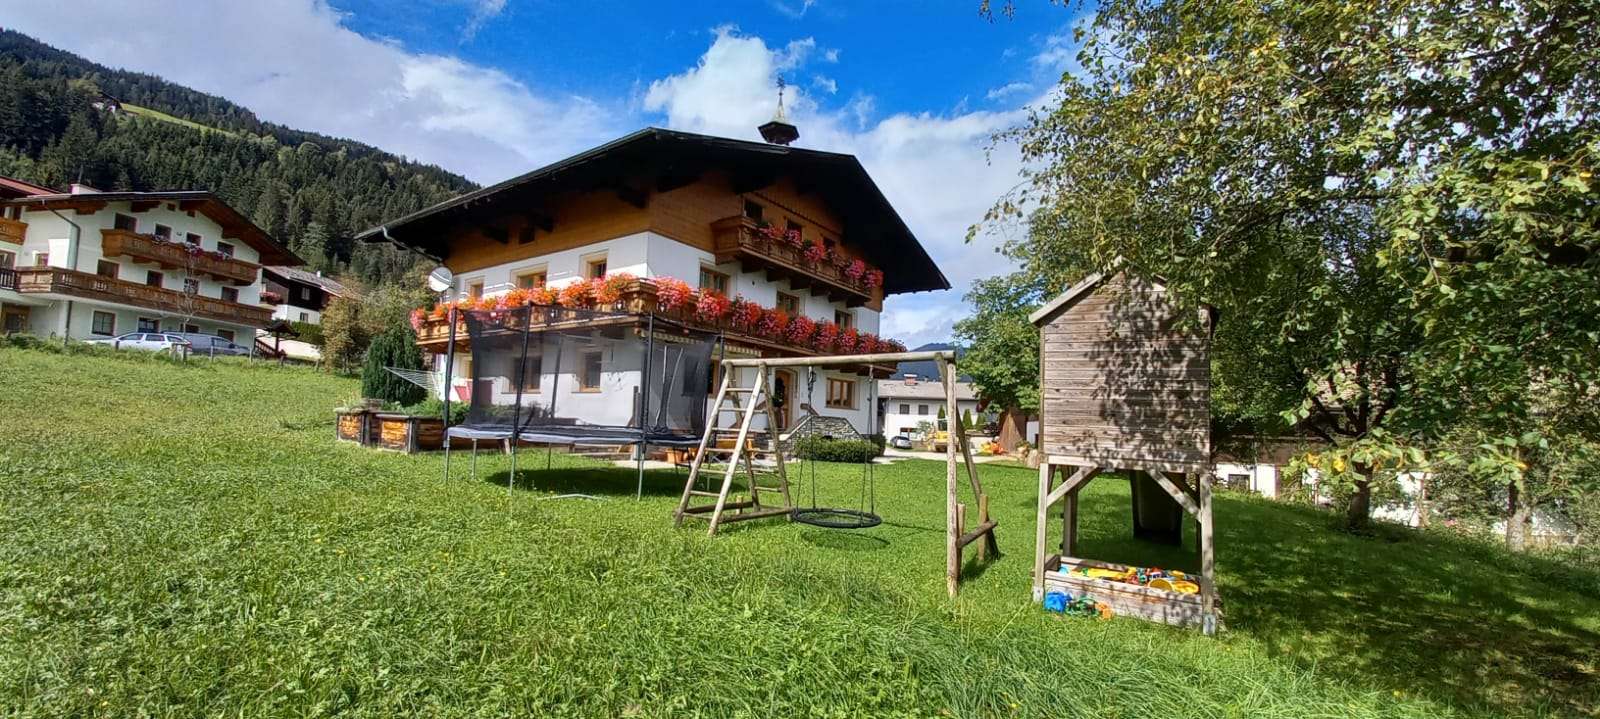 Schartlhof - Urlaub auf dem Bauernhof - Flachau - Salzburger Land